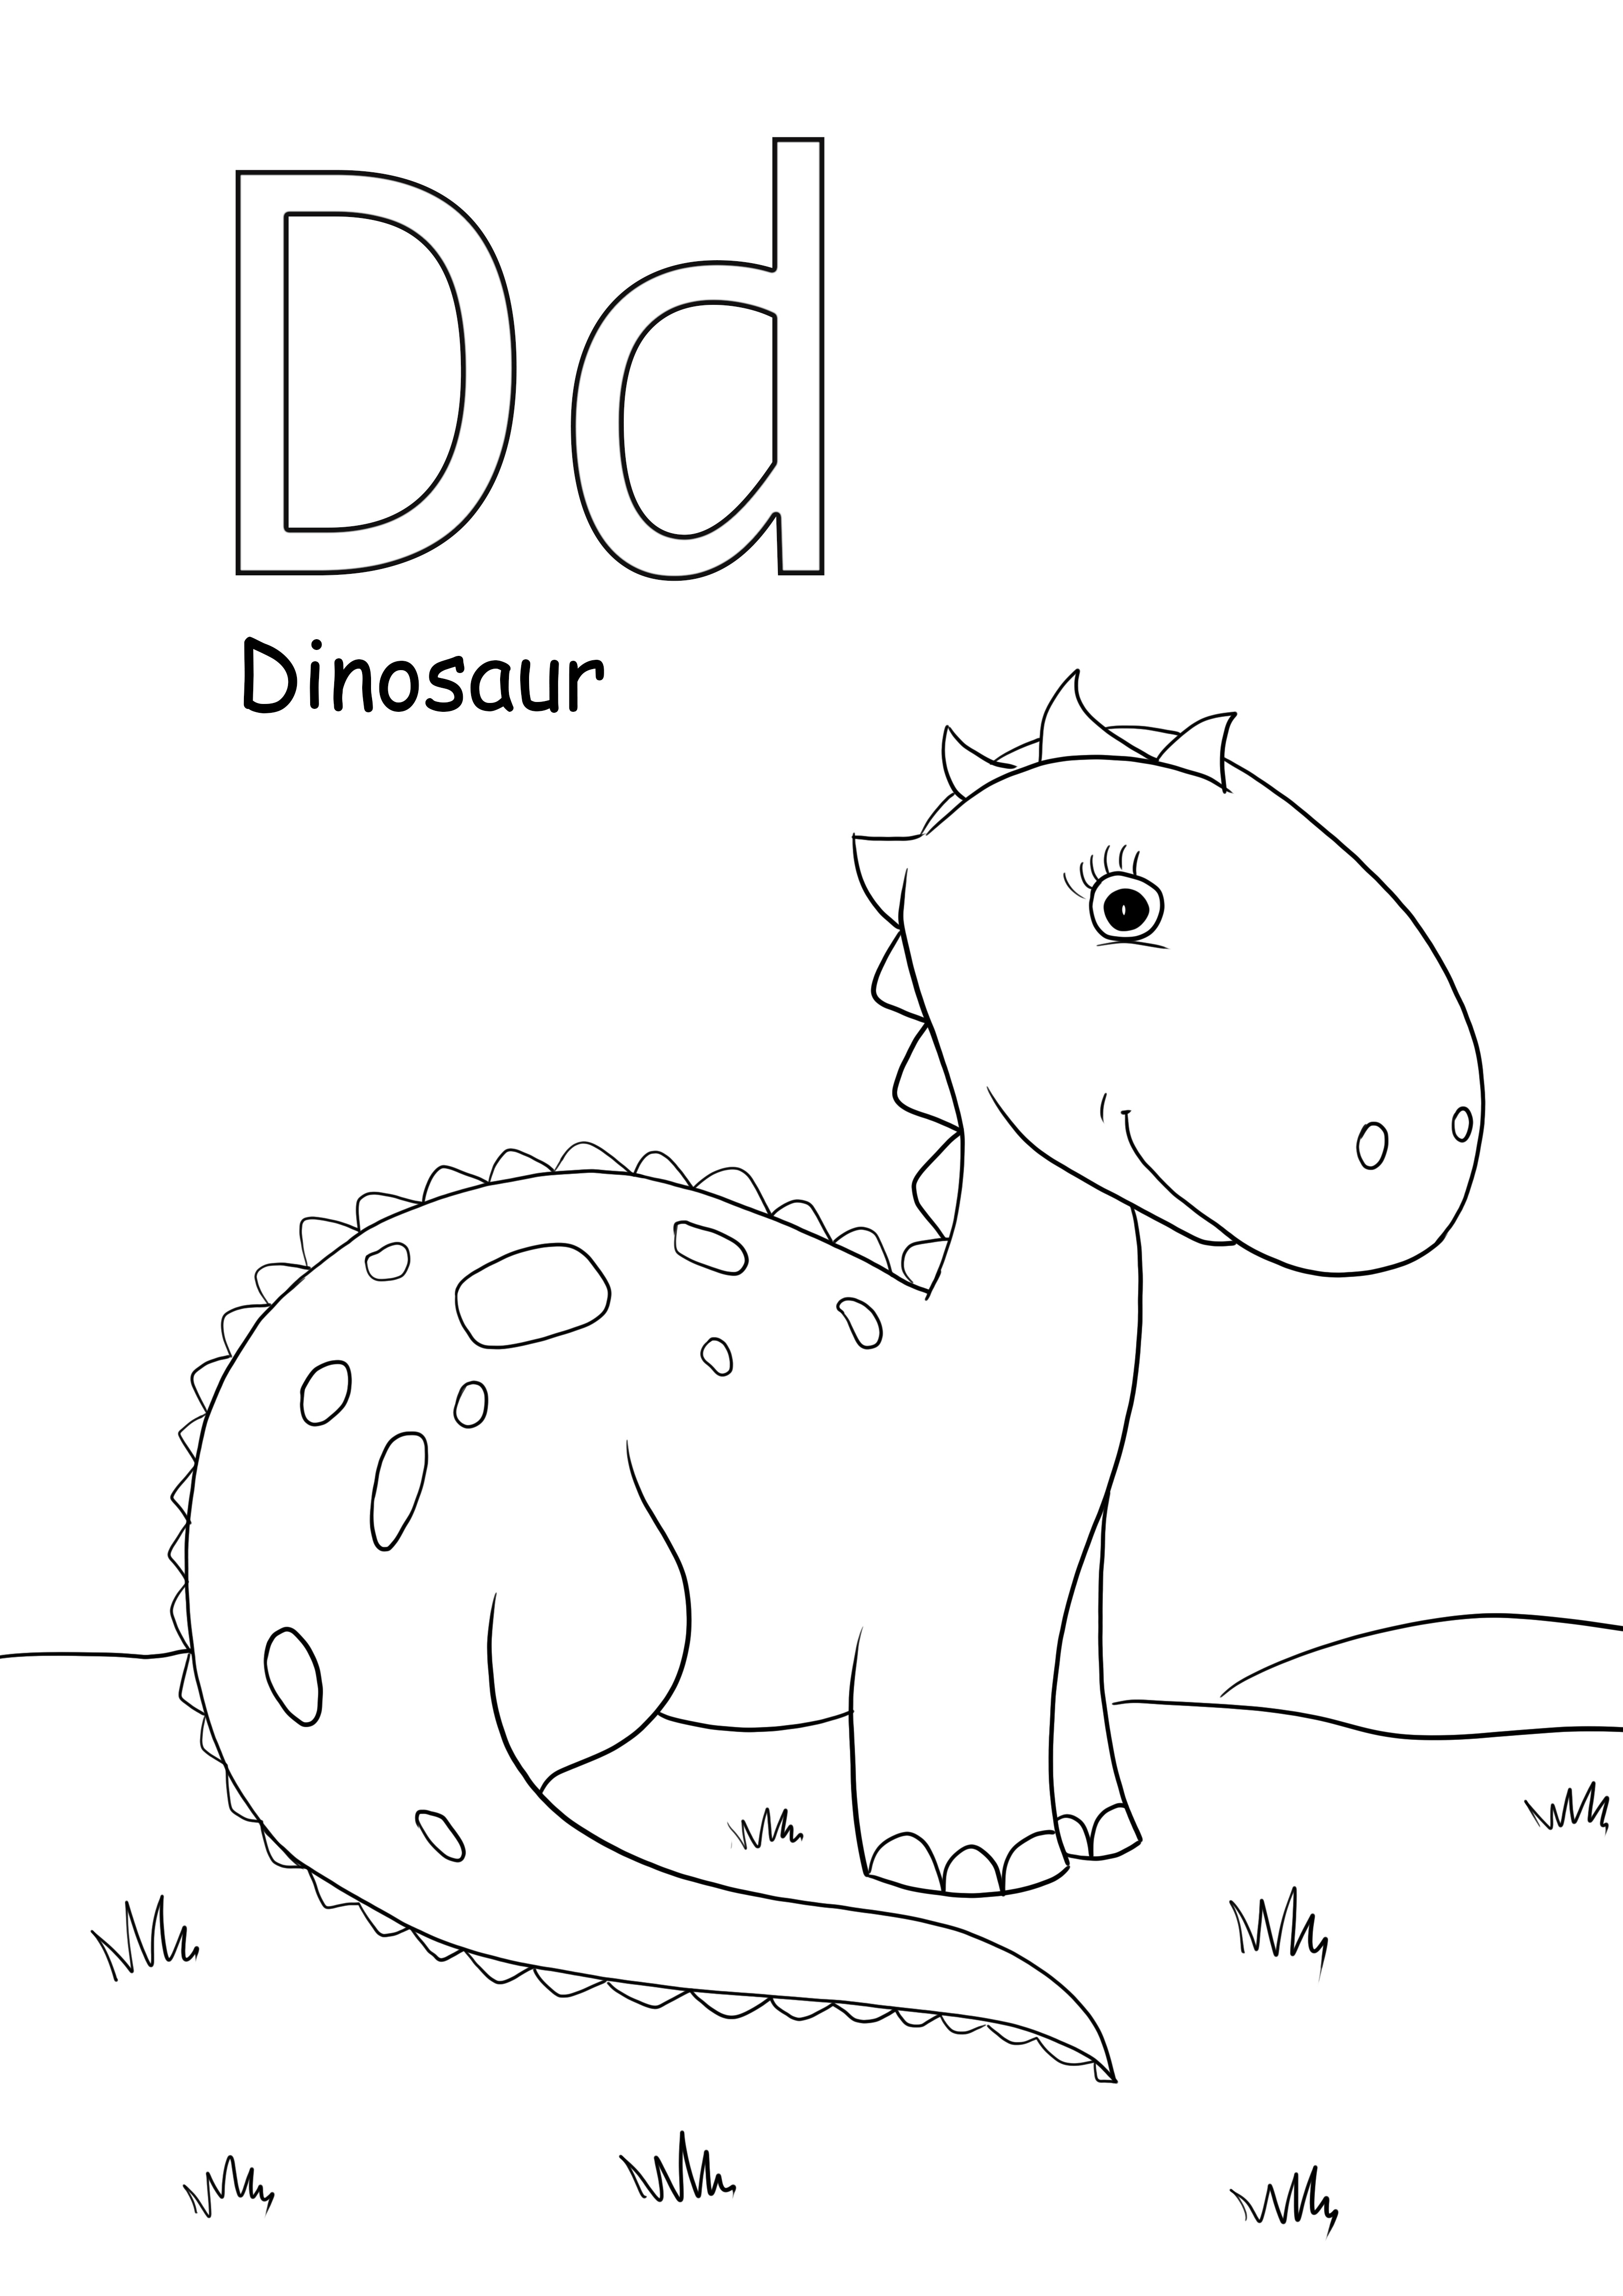 d a dinoszauruszos képek színezésére szolgál, és ingyenesen nyomtatható